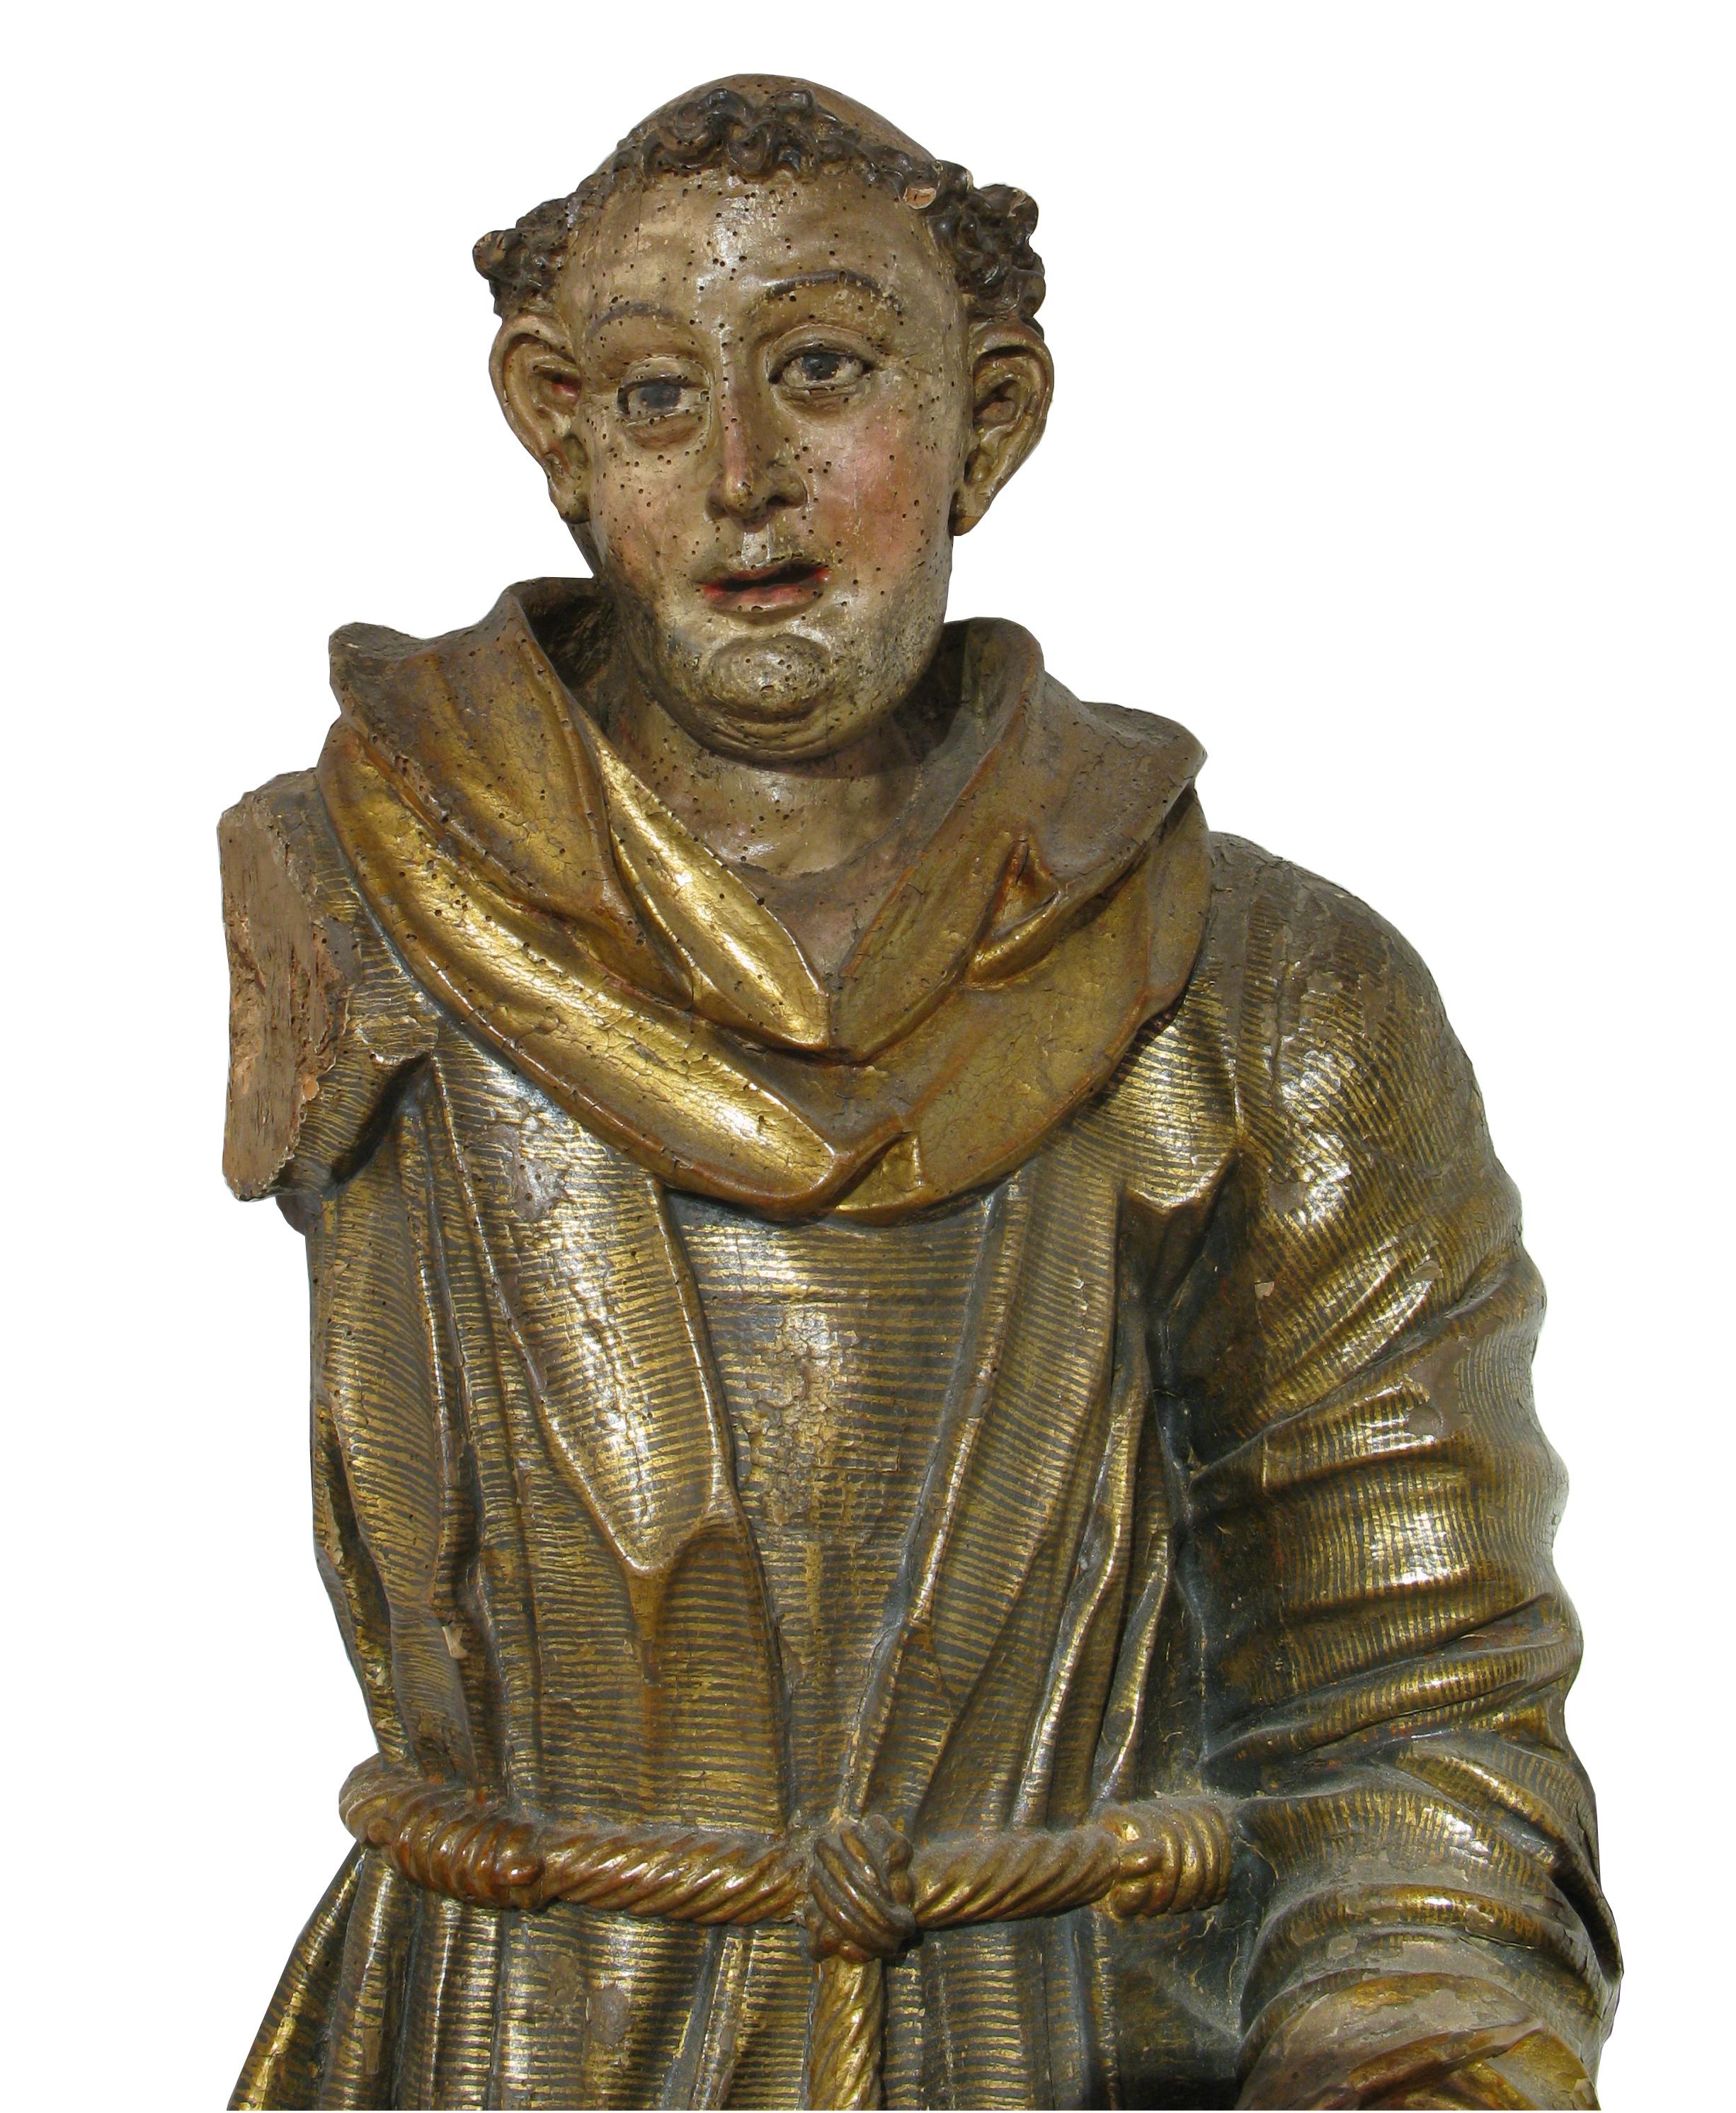 Frère (Saint Antoine), sculpture en bois polychrome et doré, XVIe siècle


Saint Antoine debout, pris  dans l'acte de prêcher.

Vêtement de soutane composé d'une tunique décorée d'or, rayée de lignes parallèles noires et denses, et serrée à la